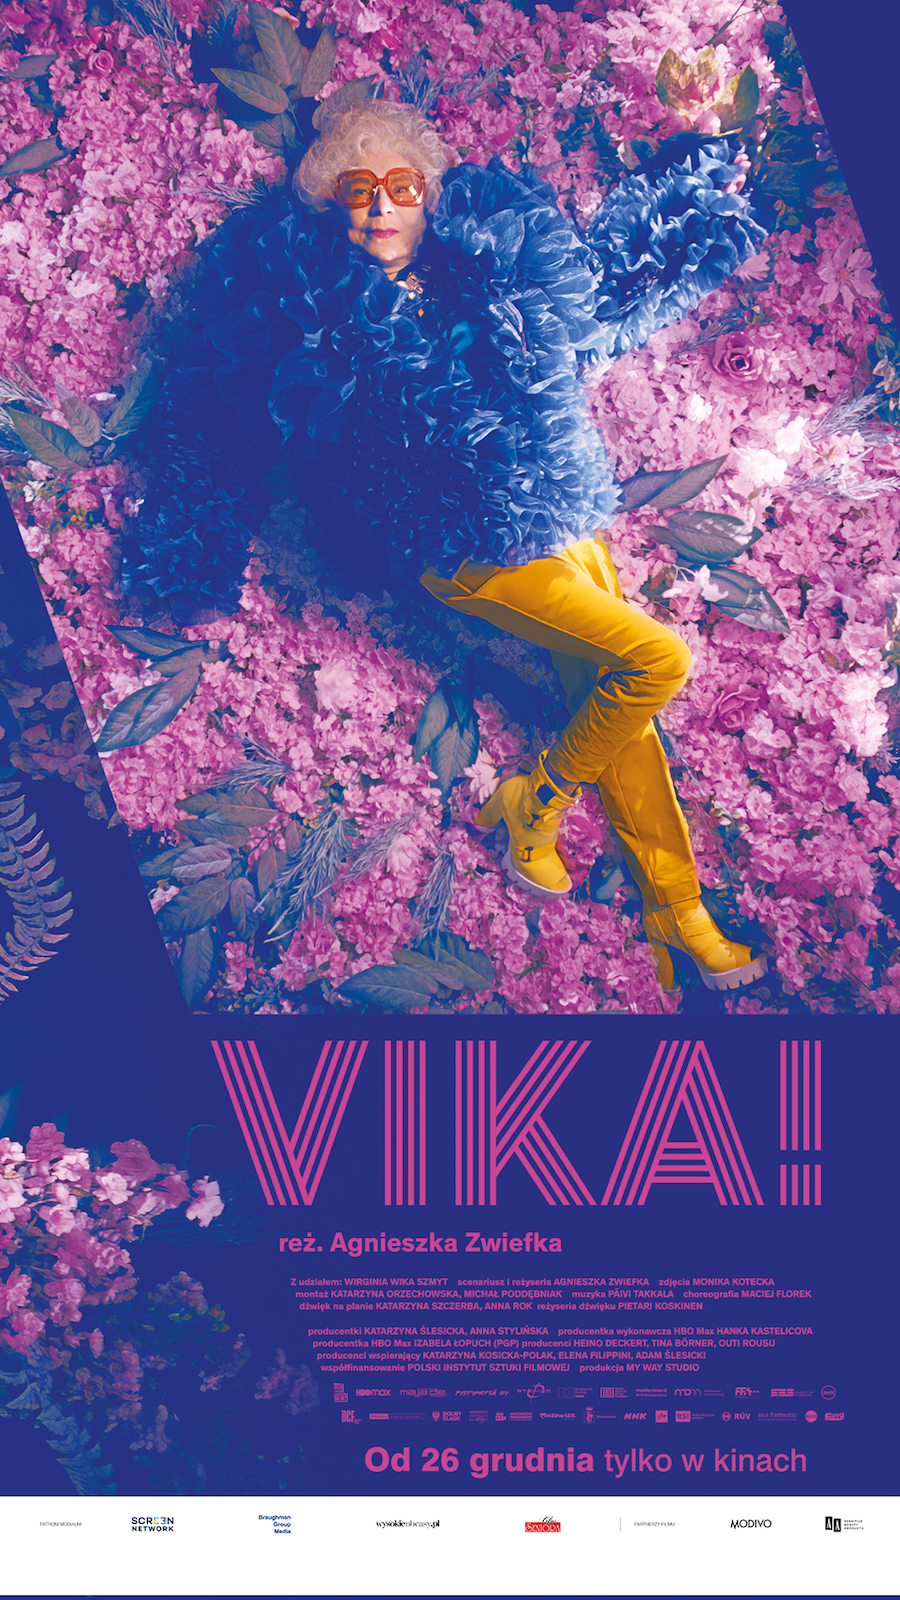 Plakat. Starsza kobieta, dj Vika, leży w żółtych spodniach i pierzastej niebieskiej kurtce na płatkach kwiatów.